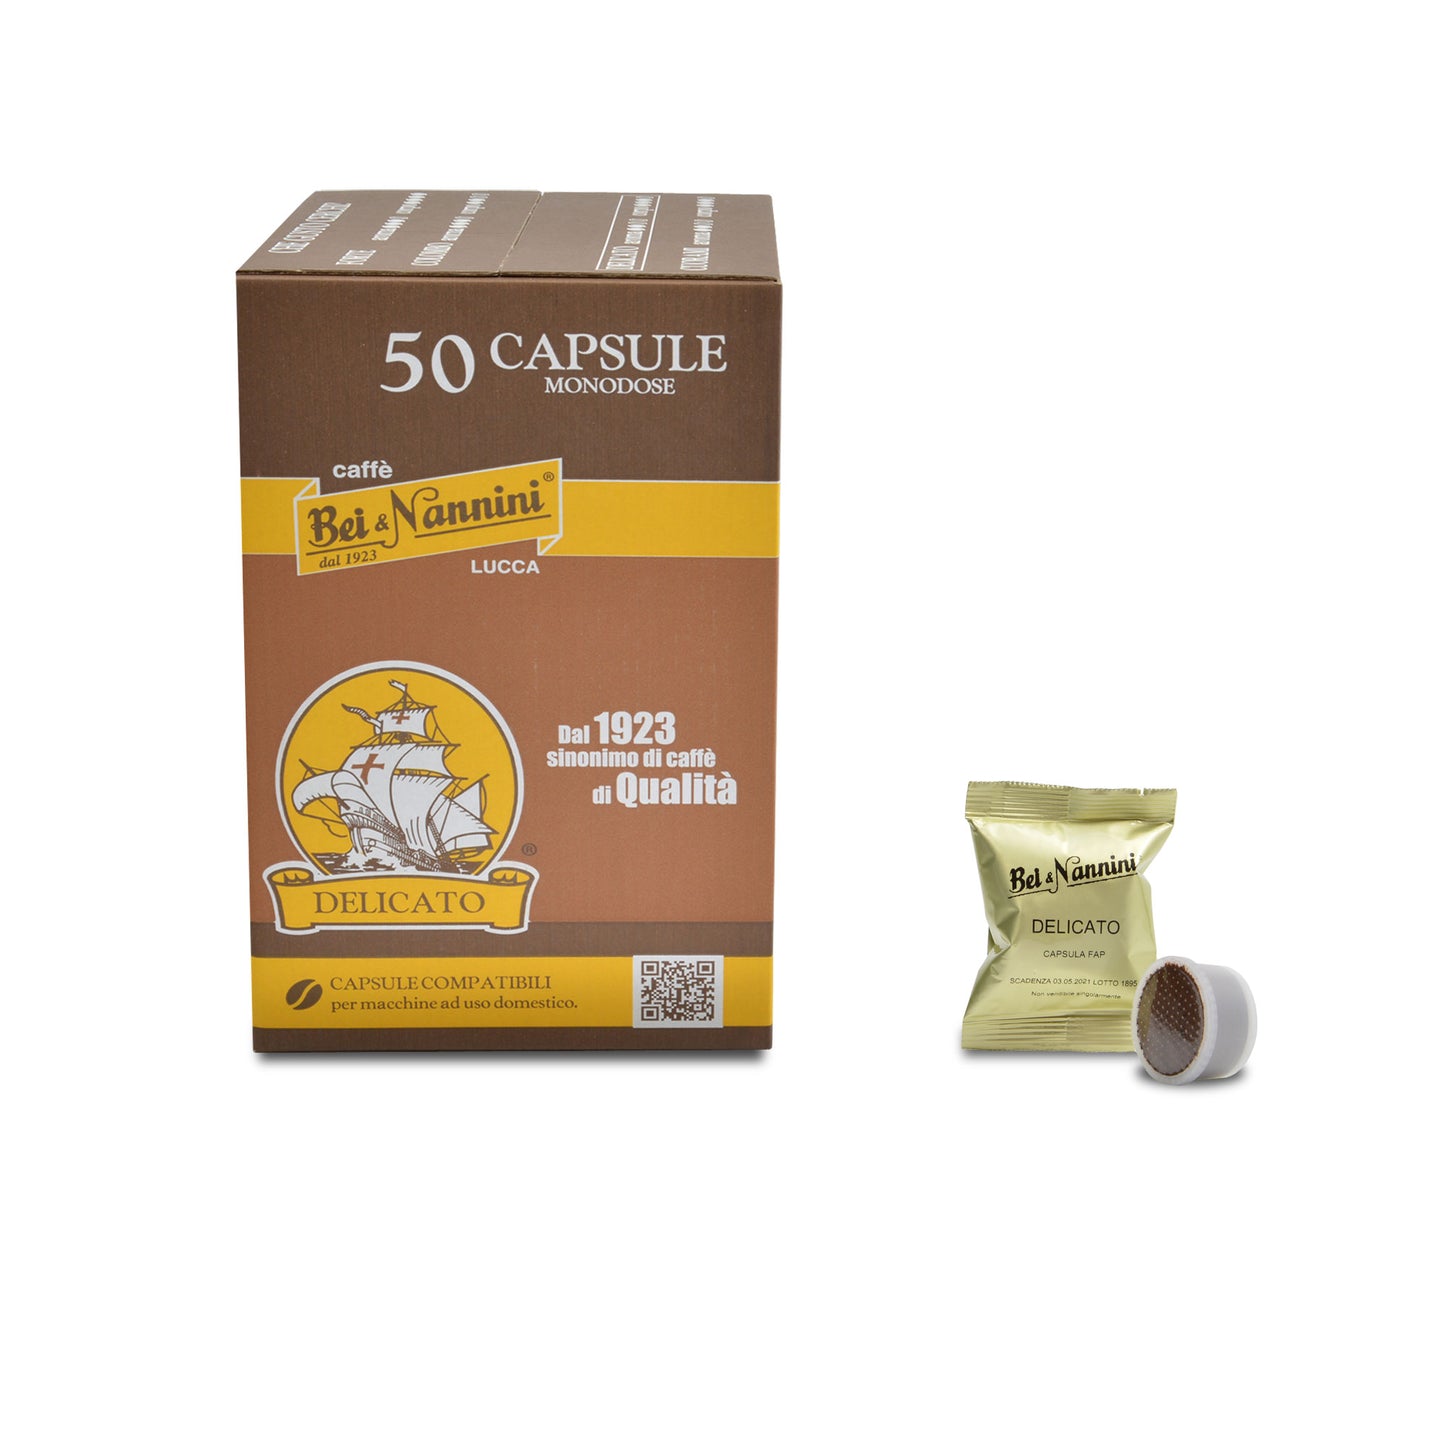 
                  
                    Delicato Blend Capsules - Espresso Point Fap® compatible 
                  
                